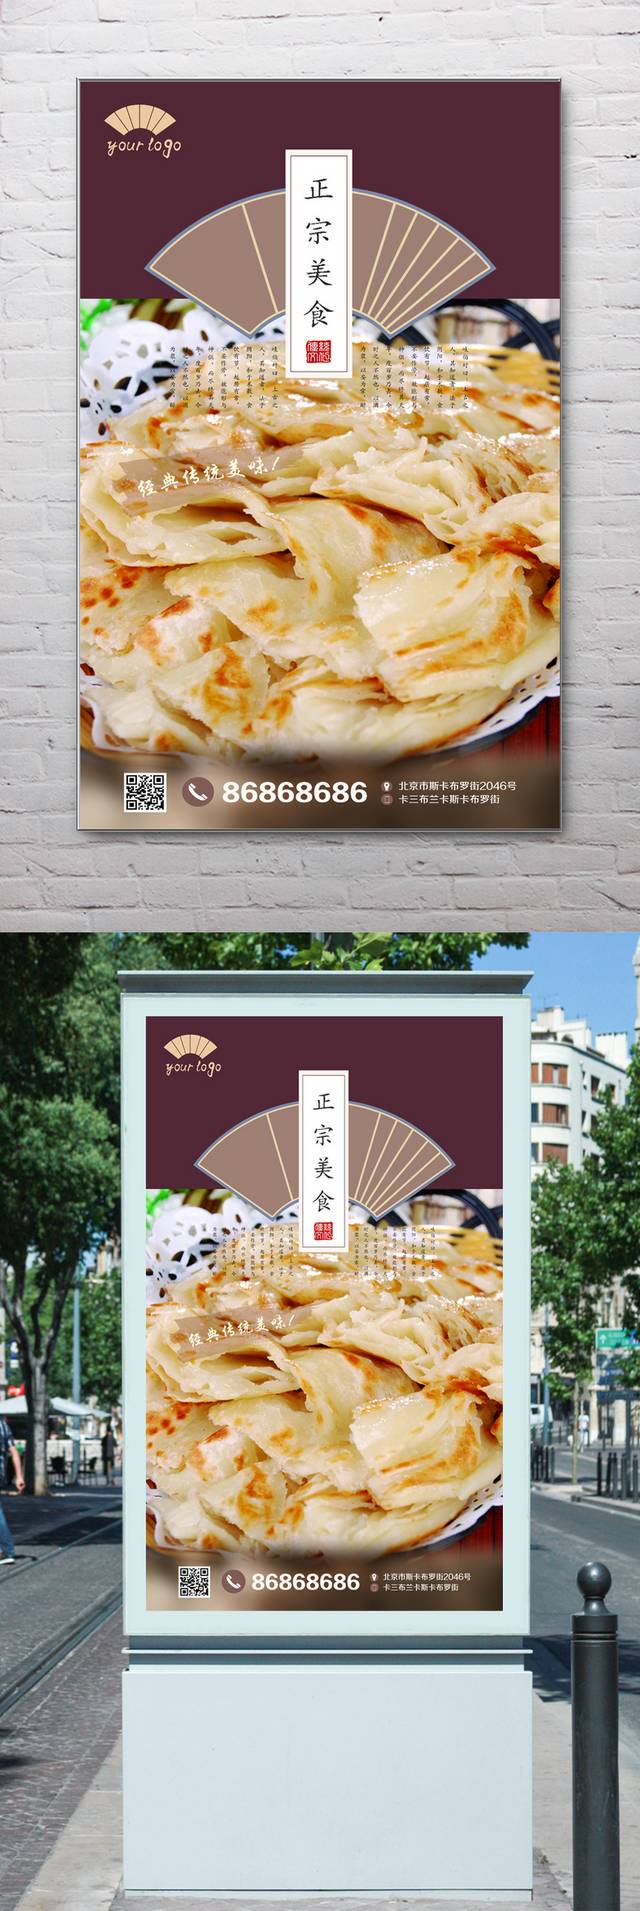 中国风千层饼宣传海报设计